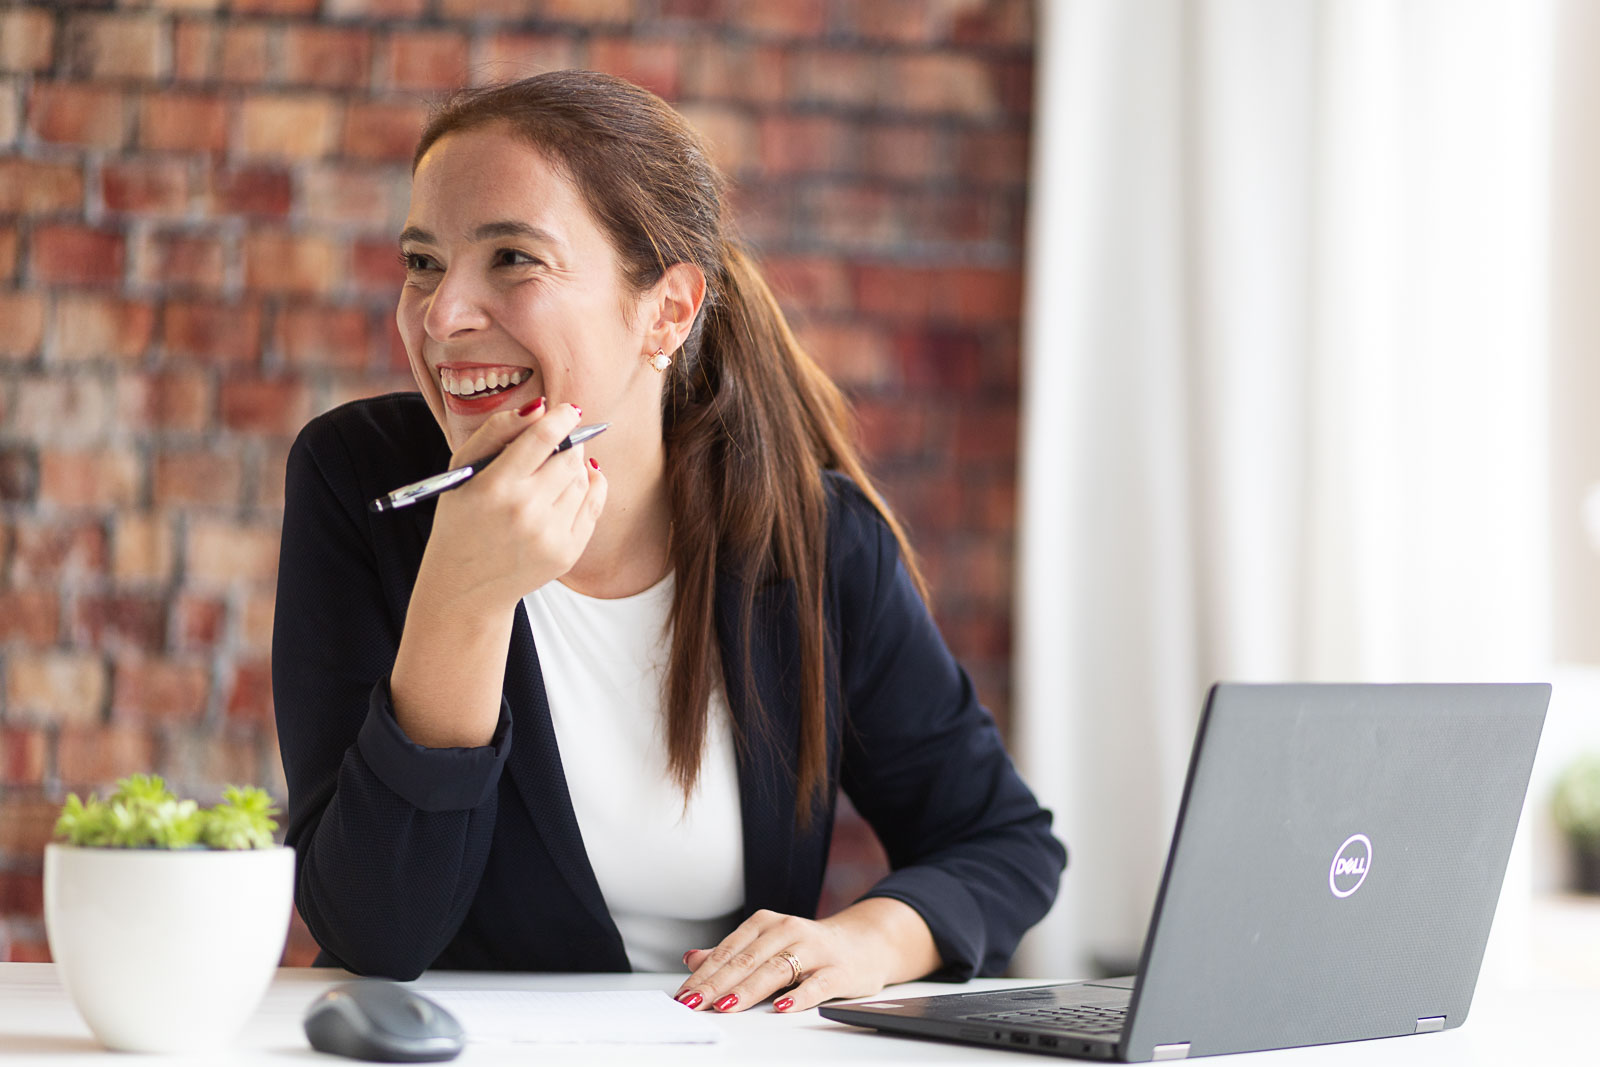 Dating-Foto einer junge, lachenden Frau mit lange, braunen Haaren zu einem Pferdeschwanz zusammengebunden. Sie sitzt mit einem Stift in der Hand in ihrem Büro an einem Schreibtisch mit Laptop und lacht freudig. Im Hintergrund ist eine rohe Backsteinwand.